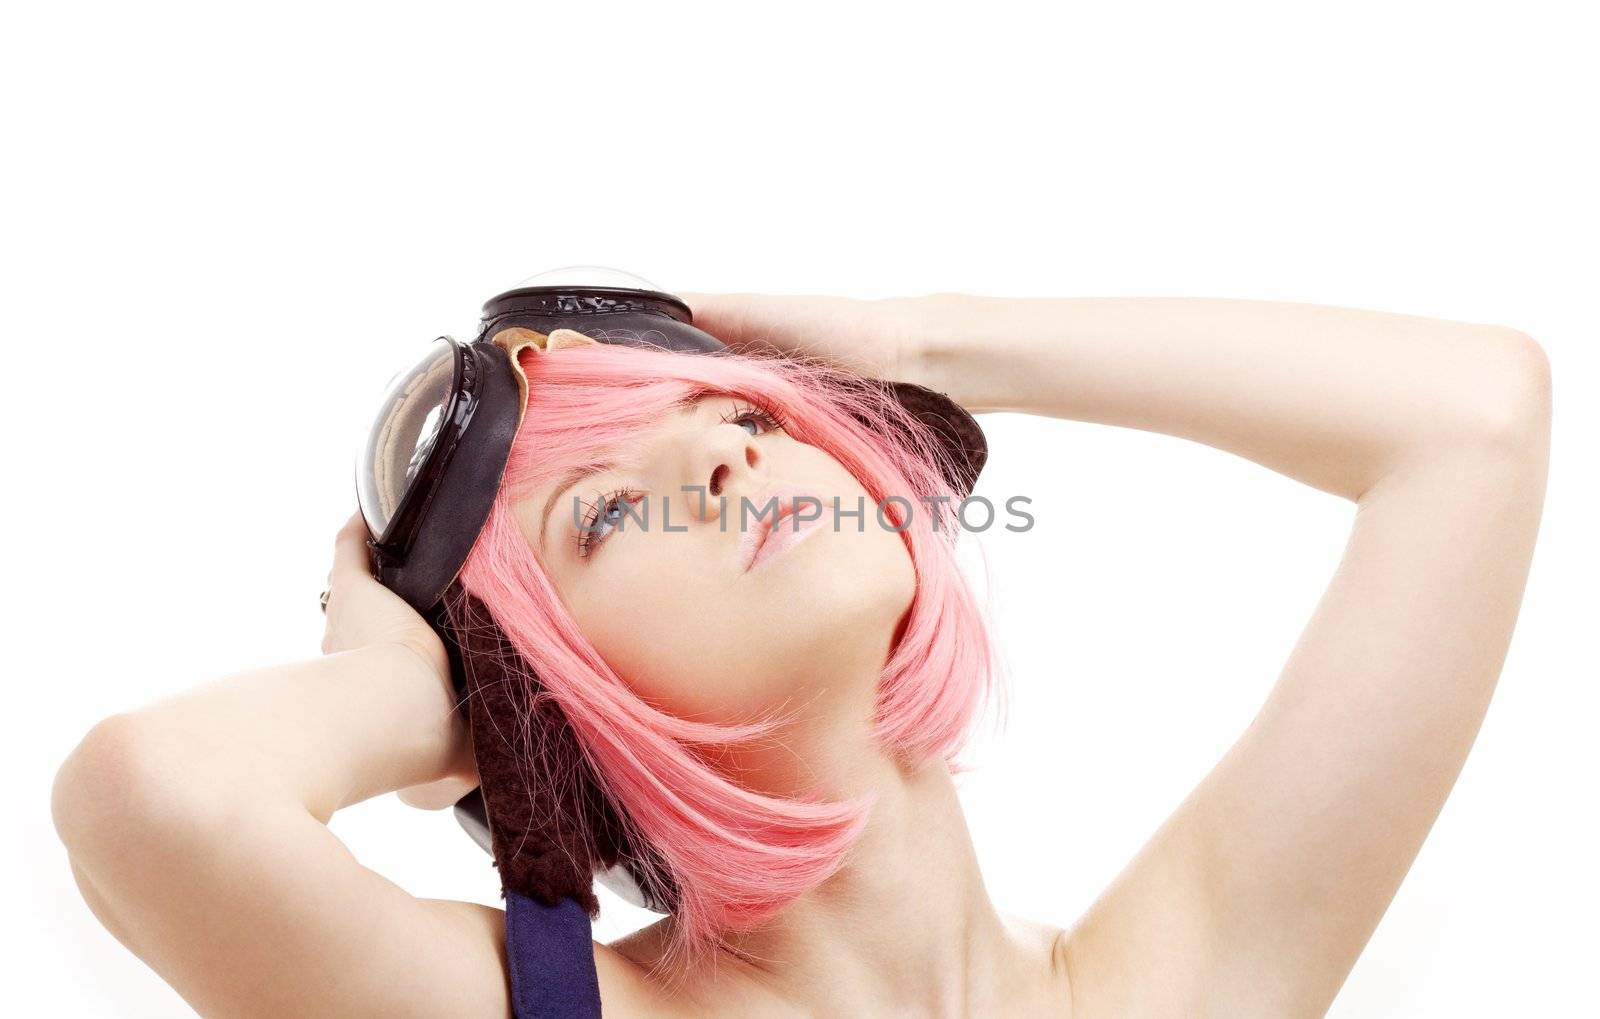 daydreaming pink hair girl in aviator helmet by dolgachov